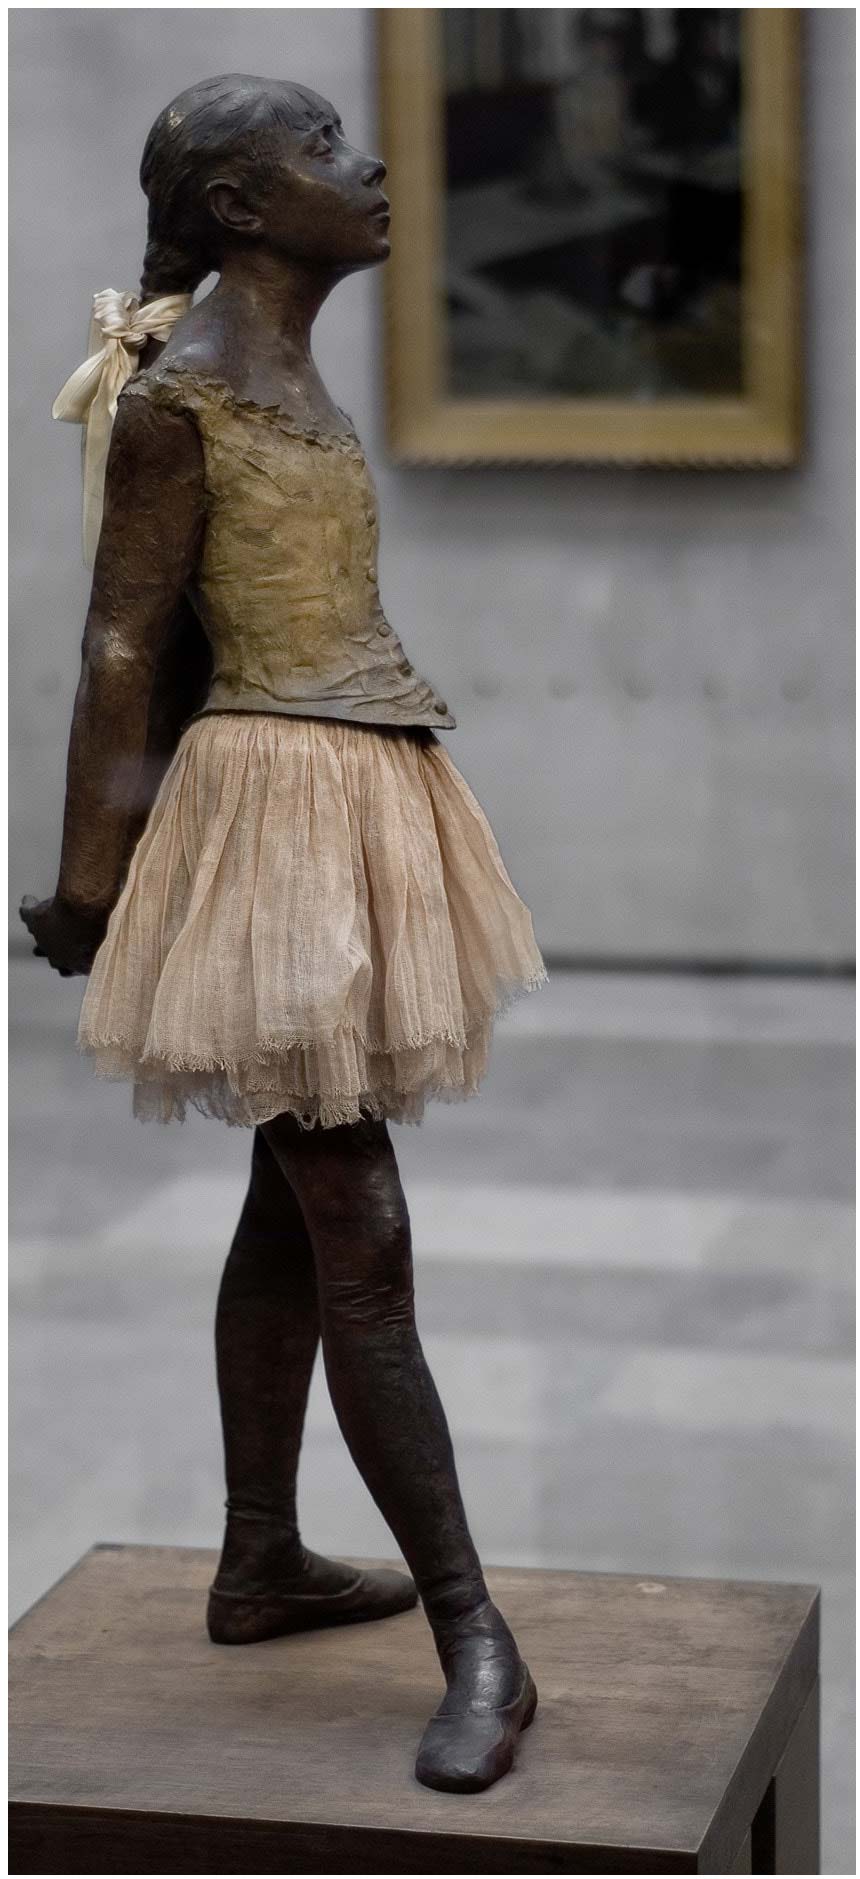 La pequeña bailarina de catorce años (1881) de Edgar Degas; 